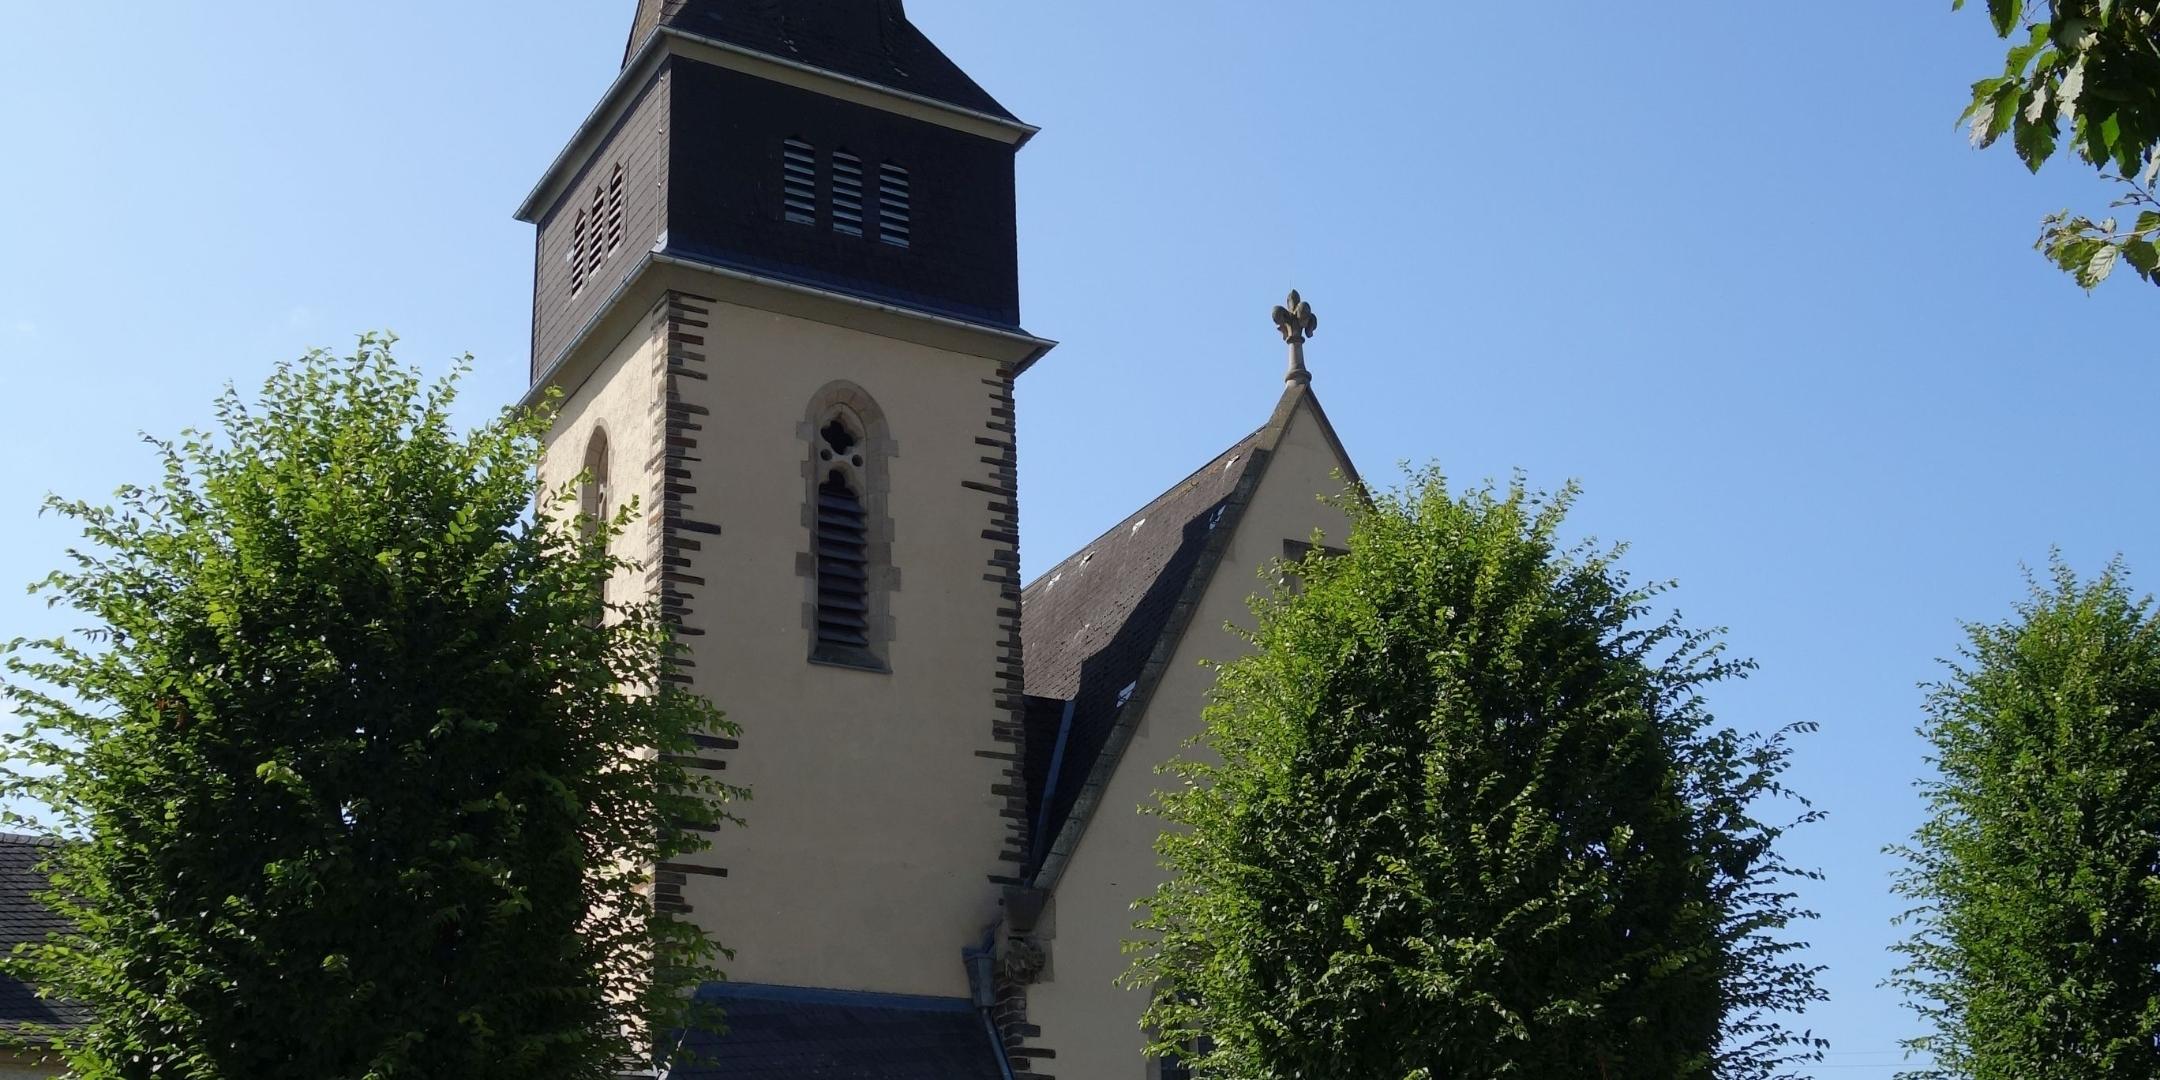 Aus der Pfarrkirche St. Martin in Heppingen wird wöchentlich ein Gottesdienst über das Ahrtalradio ausgestrahlt. (Foto: Julia Fröder/Bistum Trier)